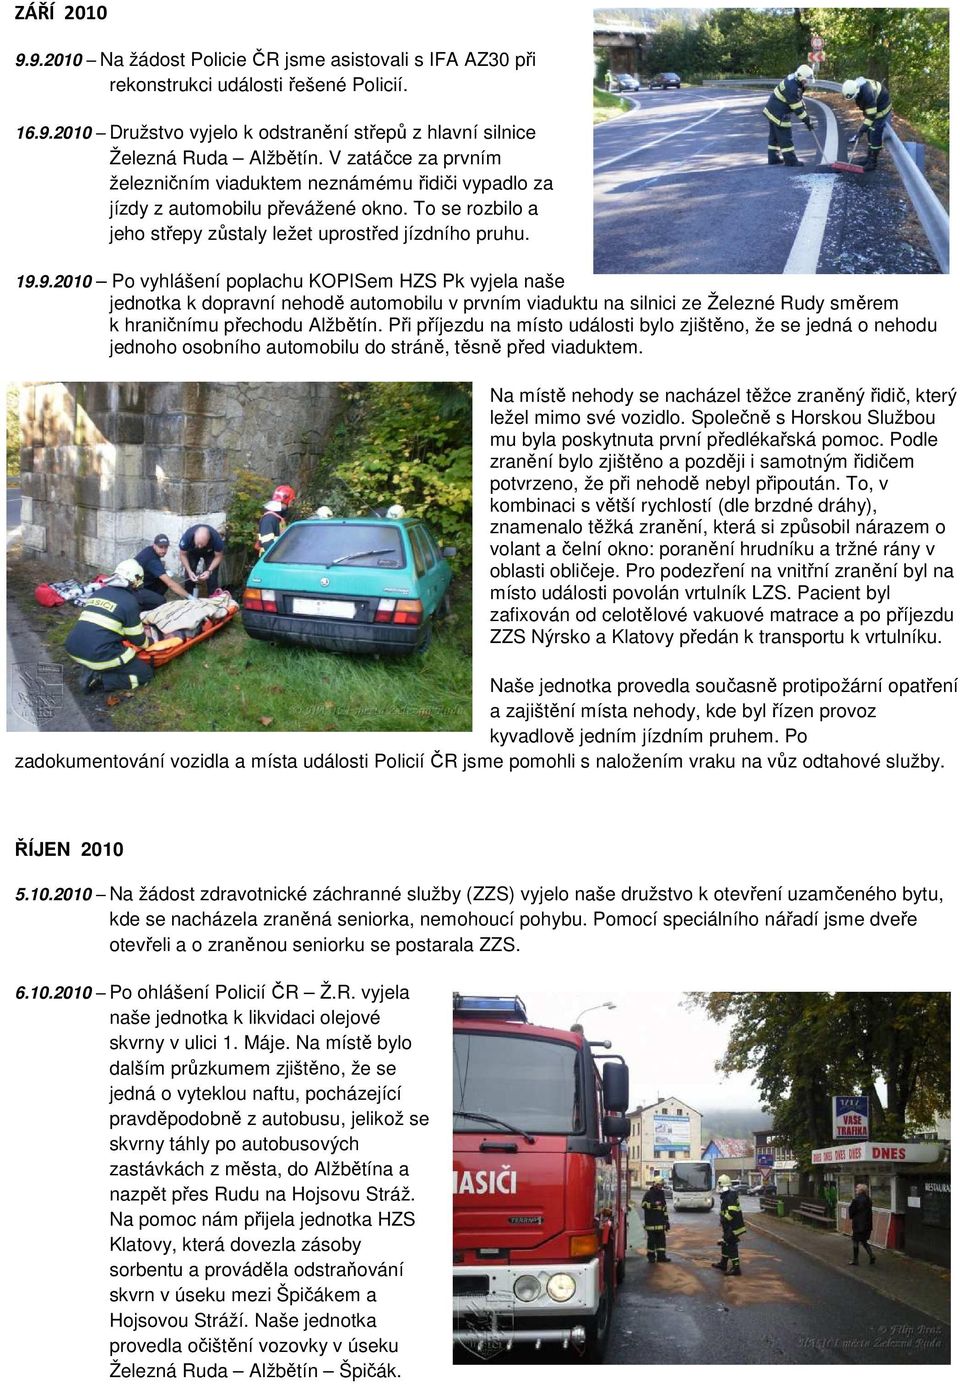 9.2010 Po vyhlášení poplachu KOPISem HZS Pk vyjela naše jednotka k dopravní nehodě automobilu v prvním viaduktu na silnici ze Železné Rudy směrem k hraničnímu přechodu Alžbětín.